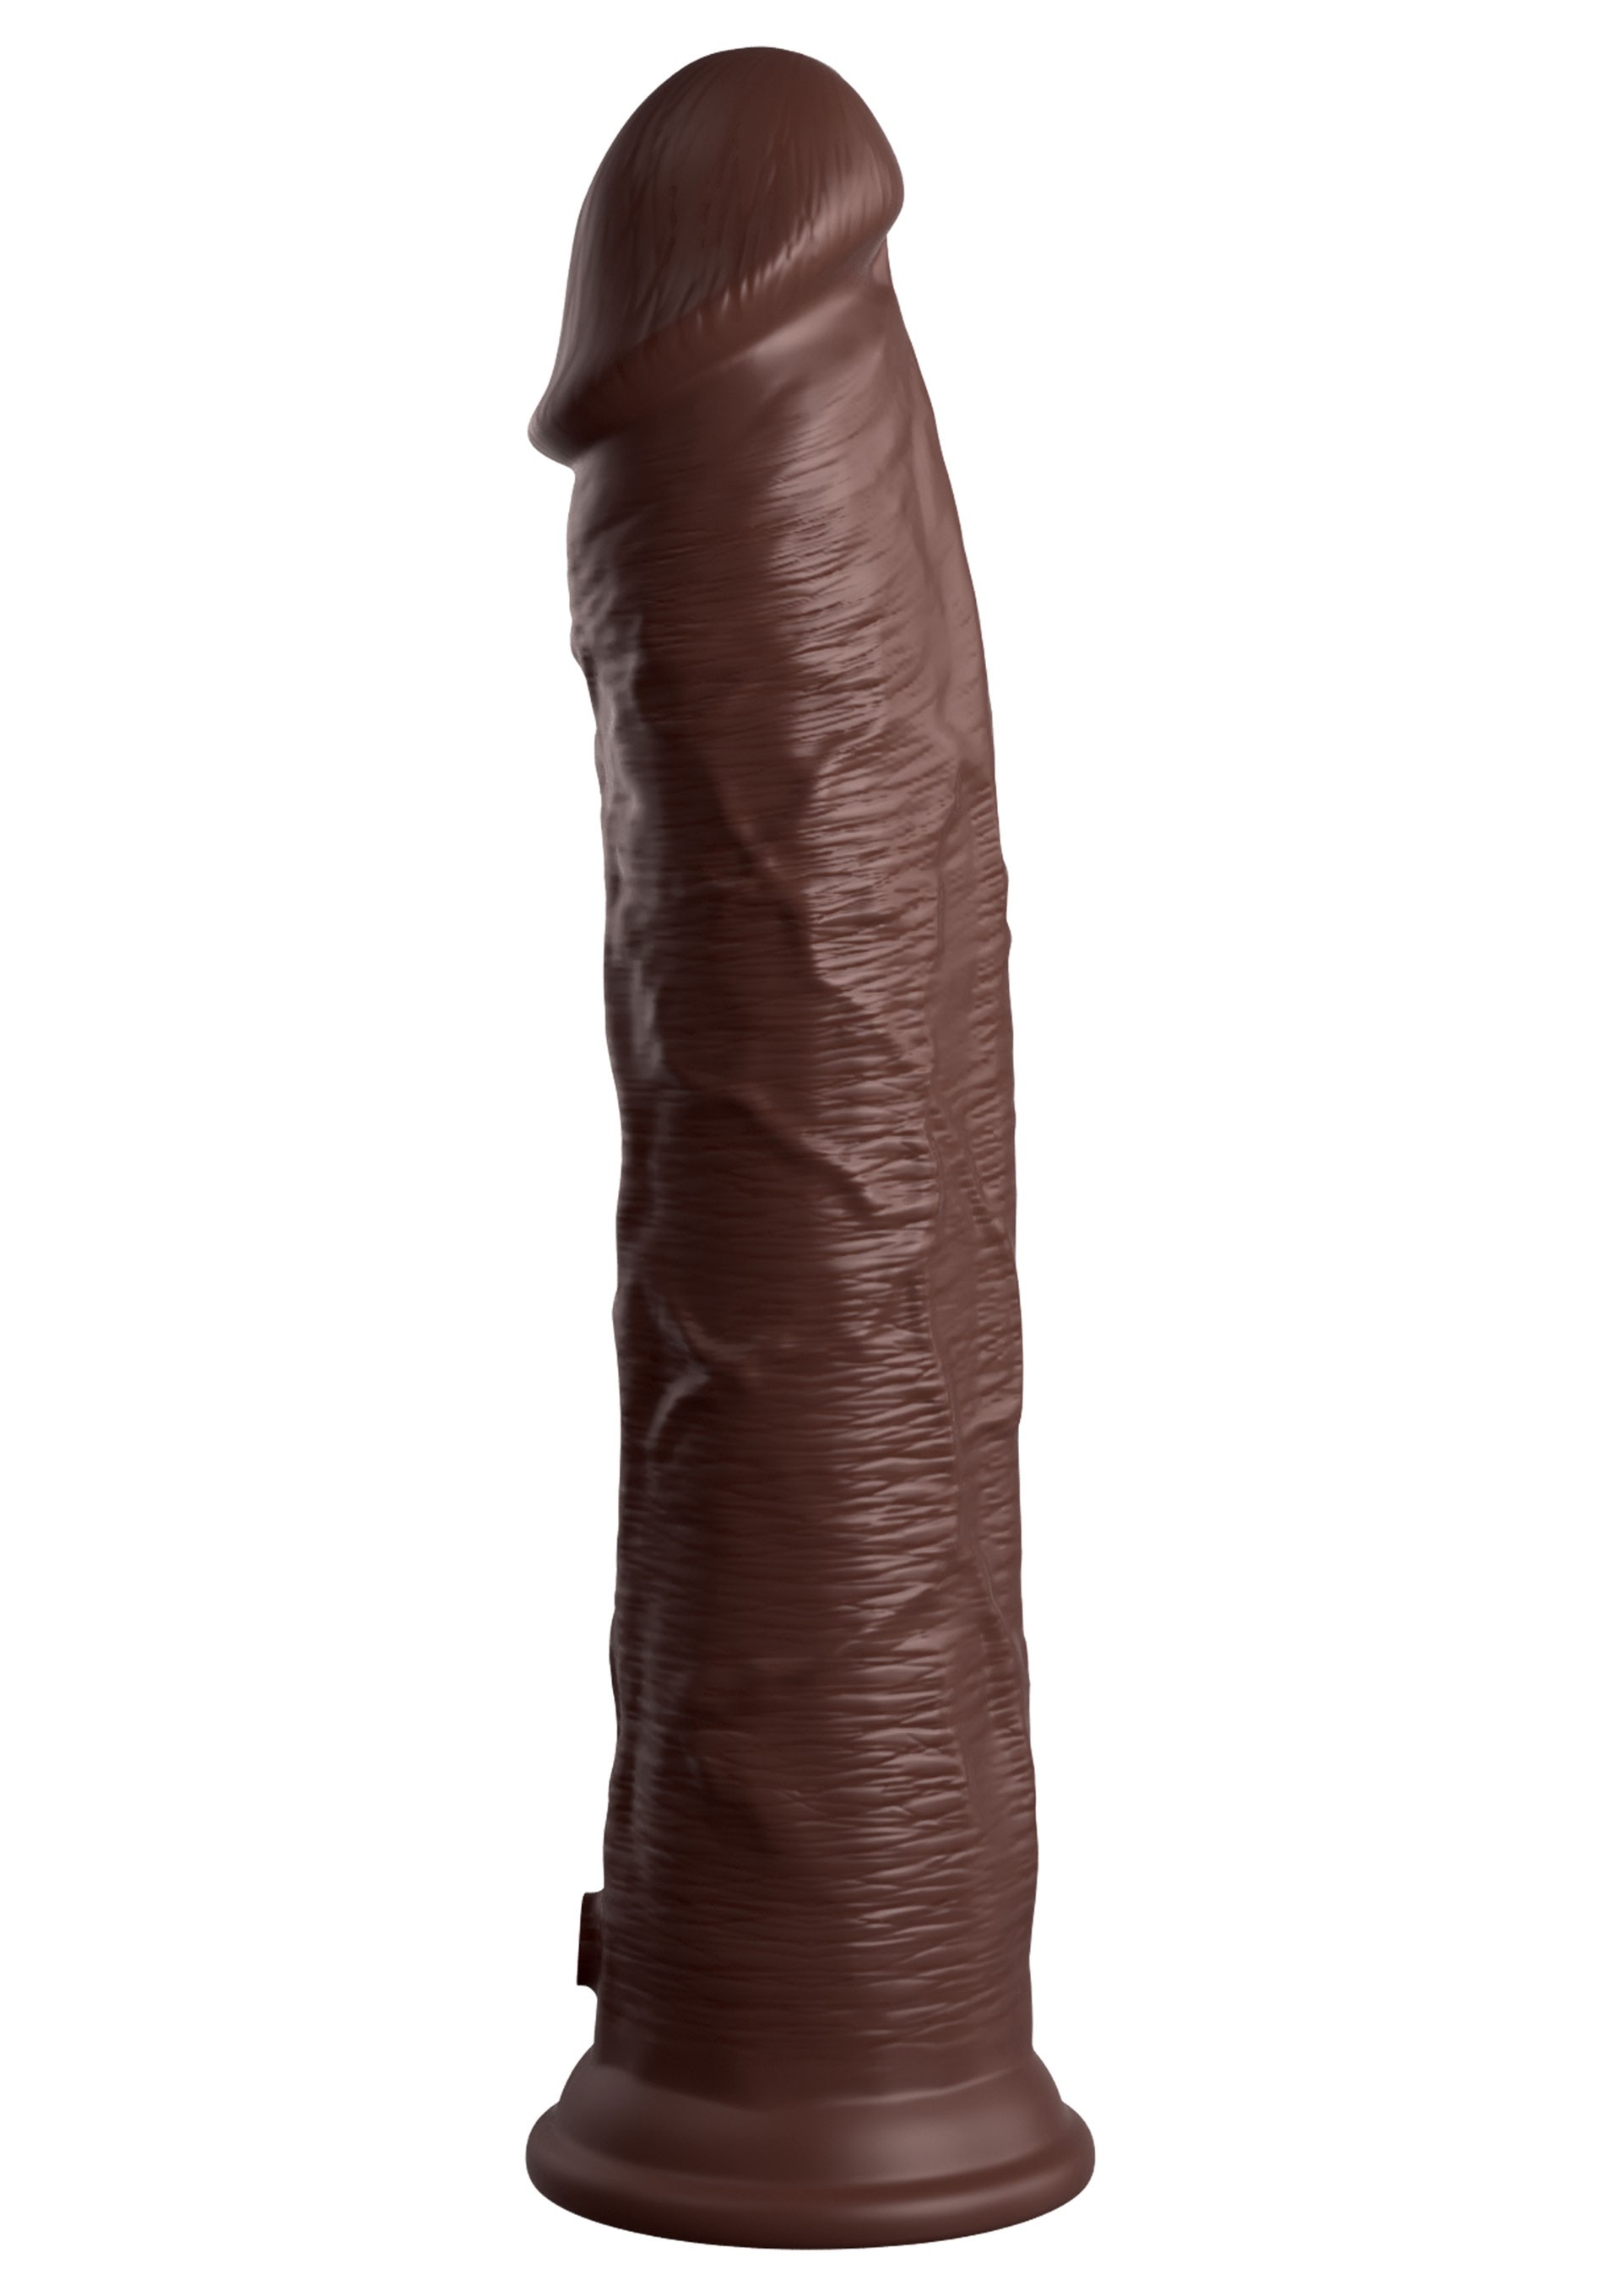 Gigantyczny murzyński penis 30 cm